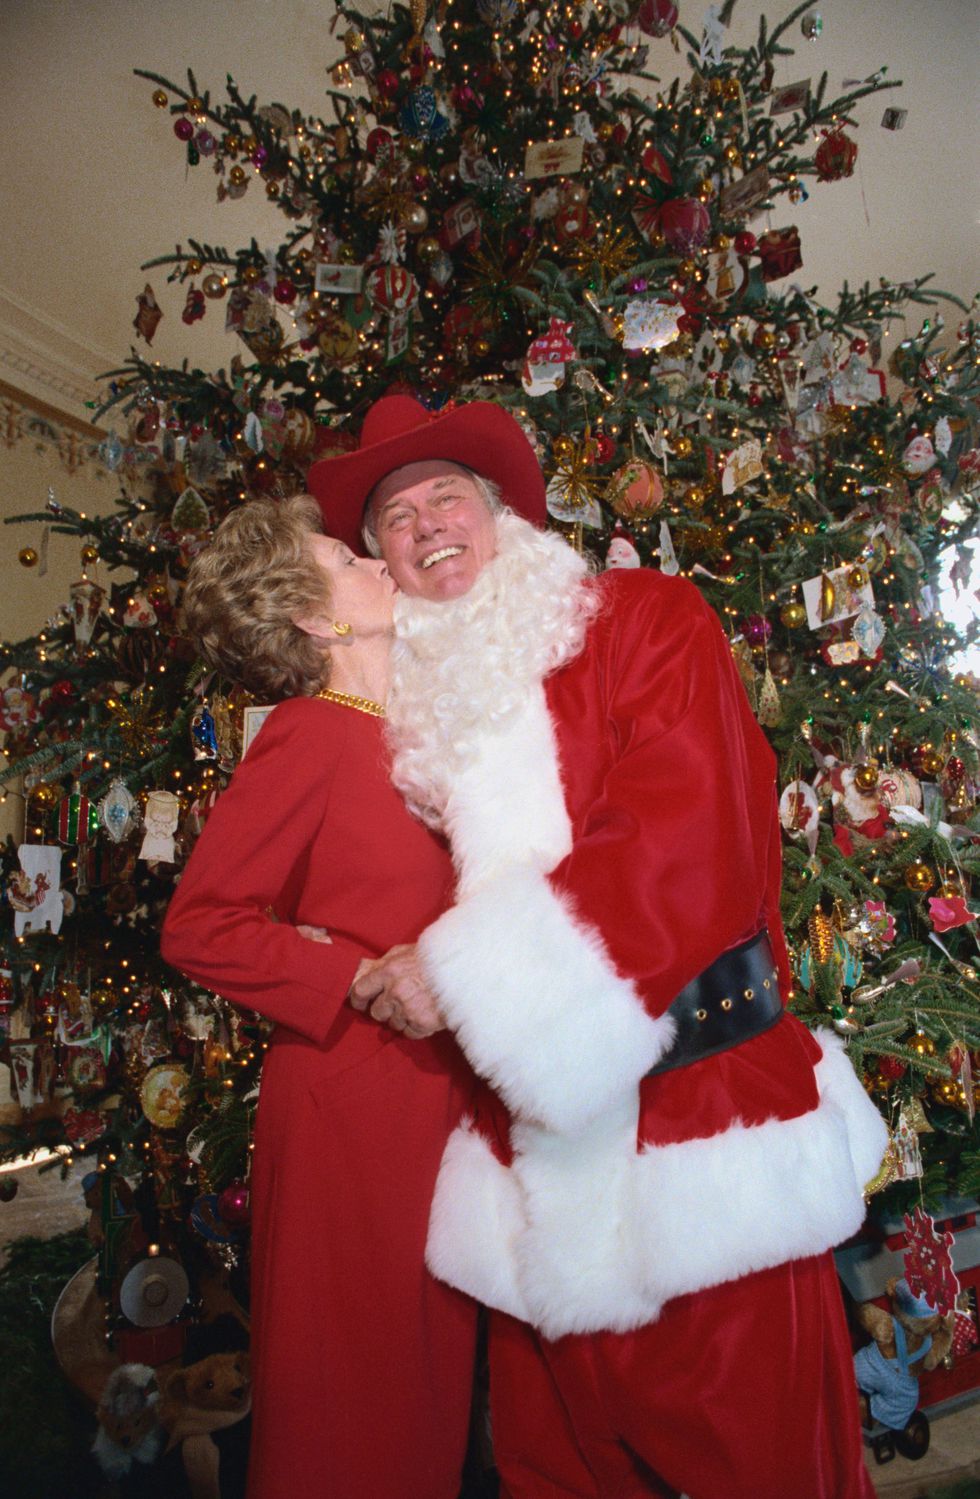 (1985) Ngôi sao bộ phim Dallas Larry Hogman diện bộ trang phục ông già Noel trong chuyến tham quan Nhà Trắng dịp Giáng sinh trong khi Nancy Reagan chọn phong cách cổ điển để trang trí cho cây thông Phòng Xanh. Ảnh: Getty Images.